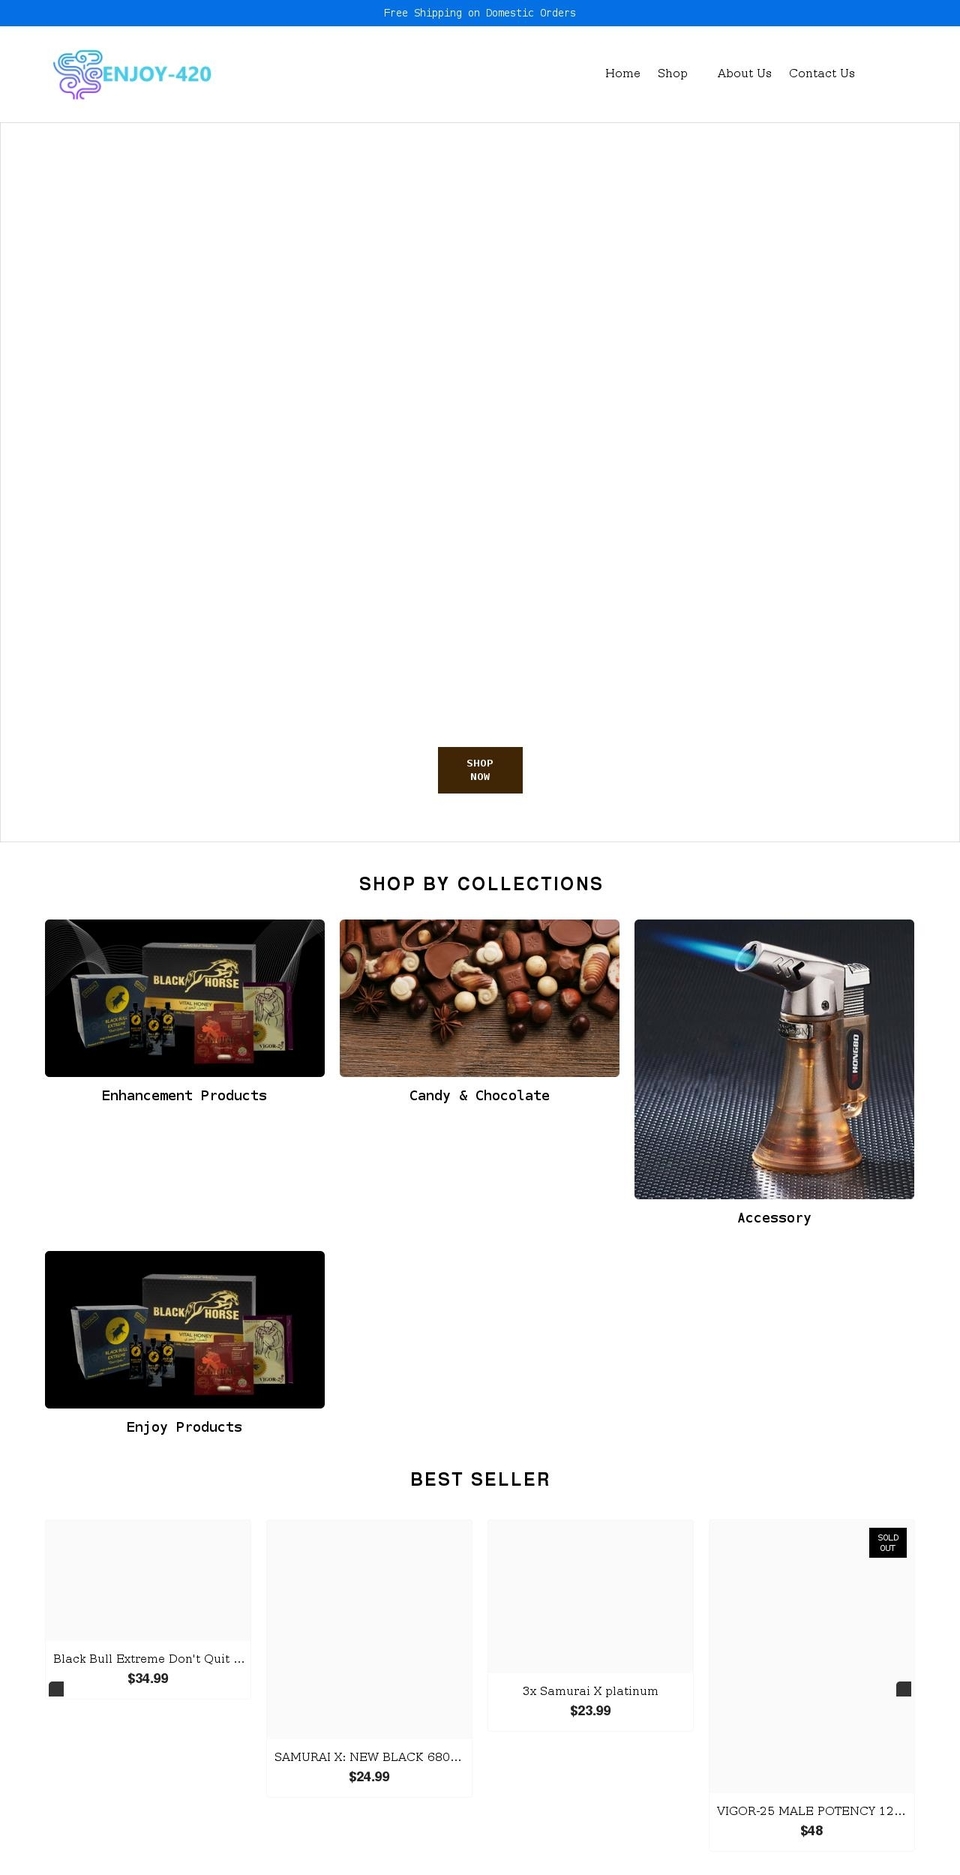 ENJOY Shopify theme site example enjoy-420.com